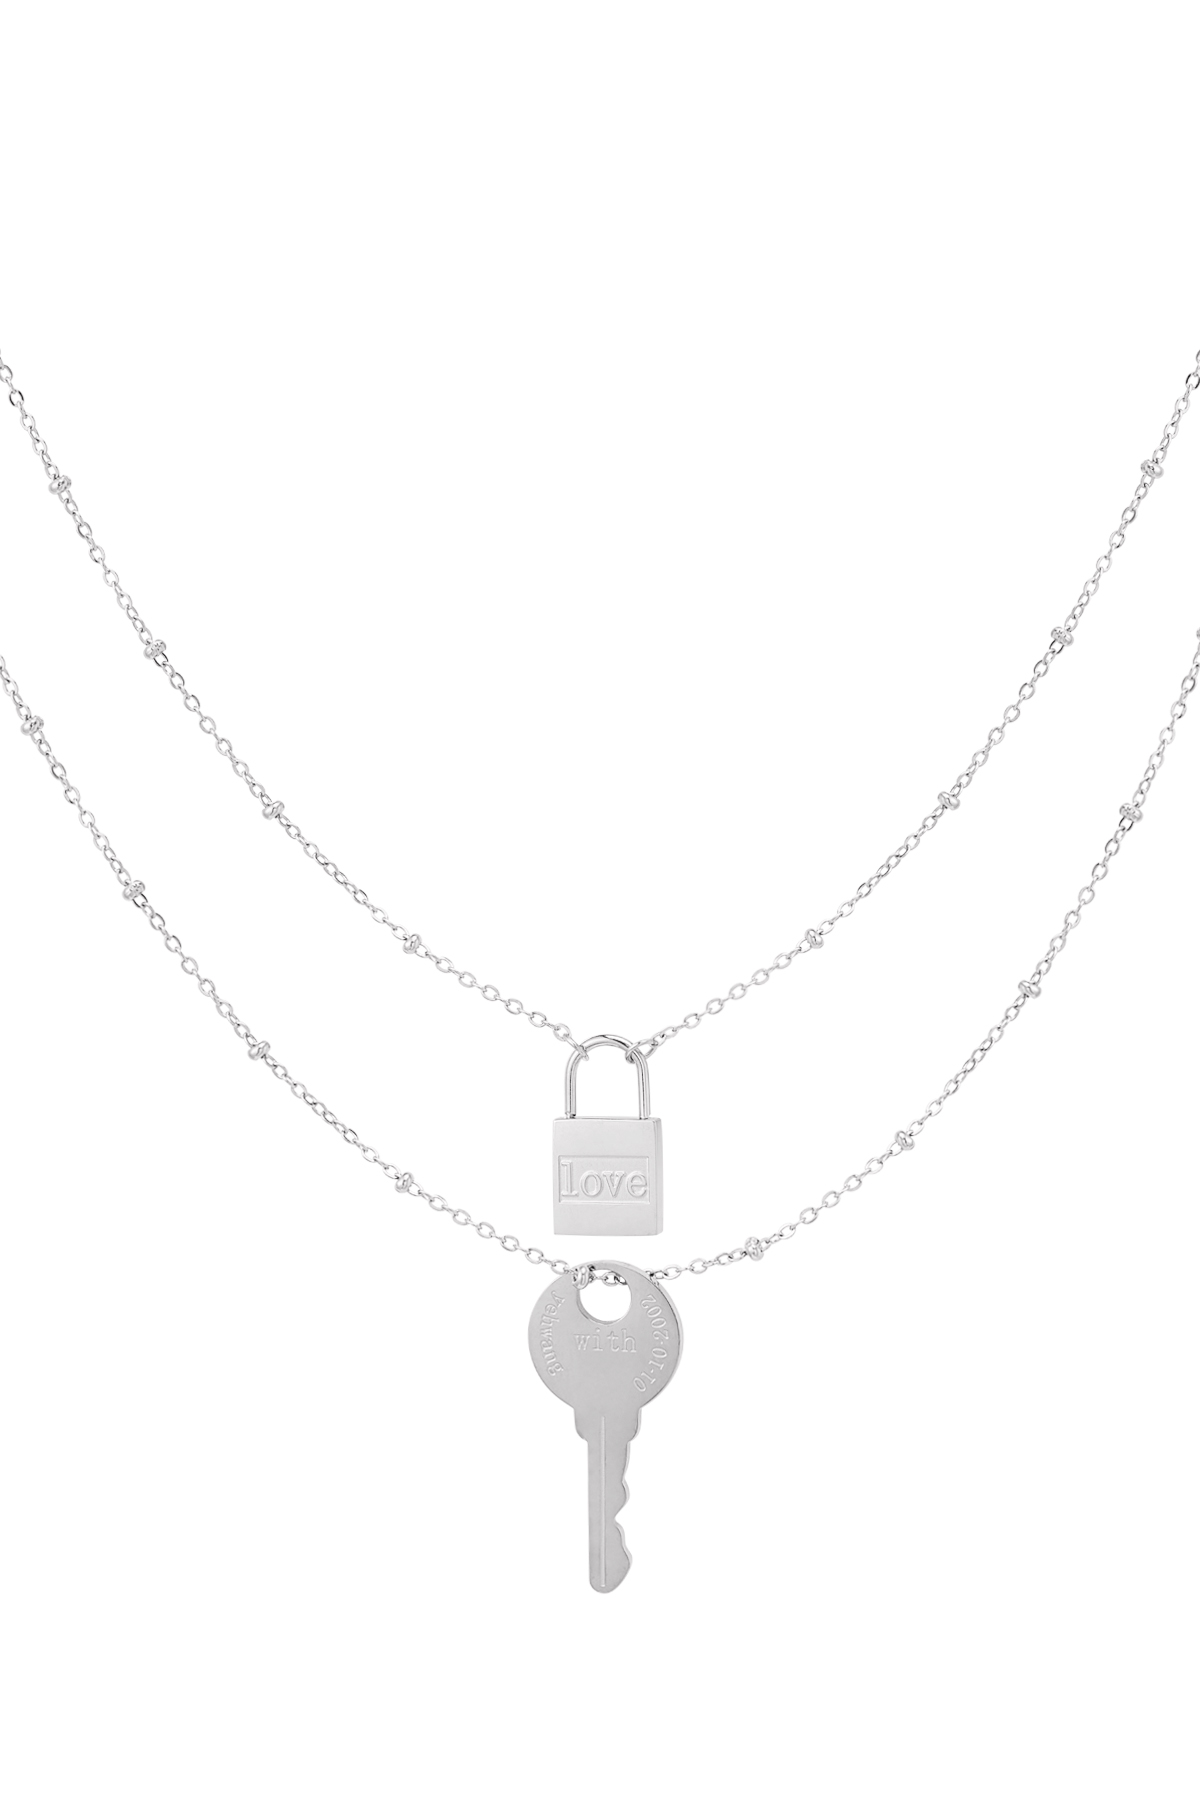 Çift zincirli anahtar ve kilit - gümüş Paslanmaz Çelik h5 